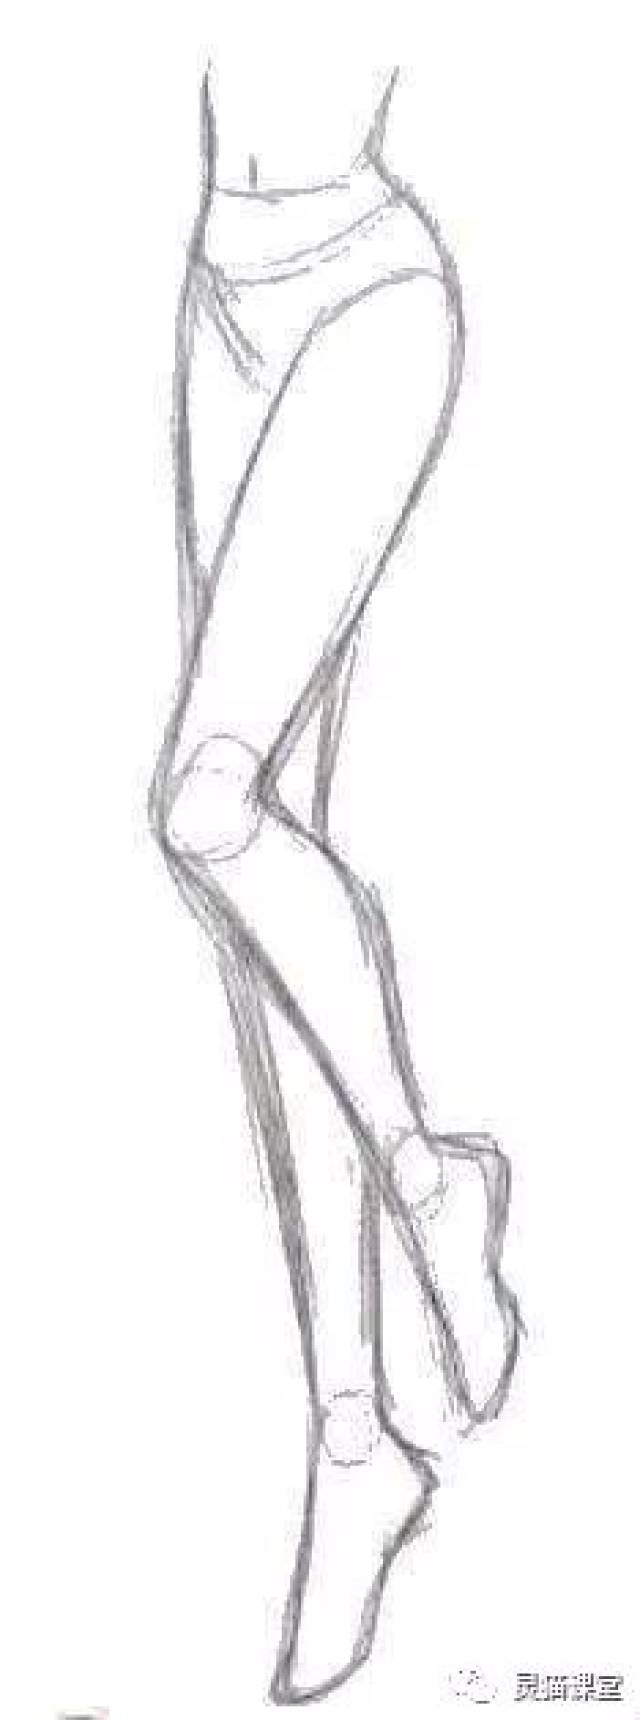 2.在结构图的基础上绘制出人物的双腿.